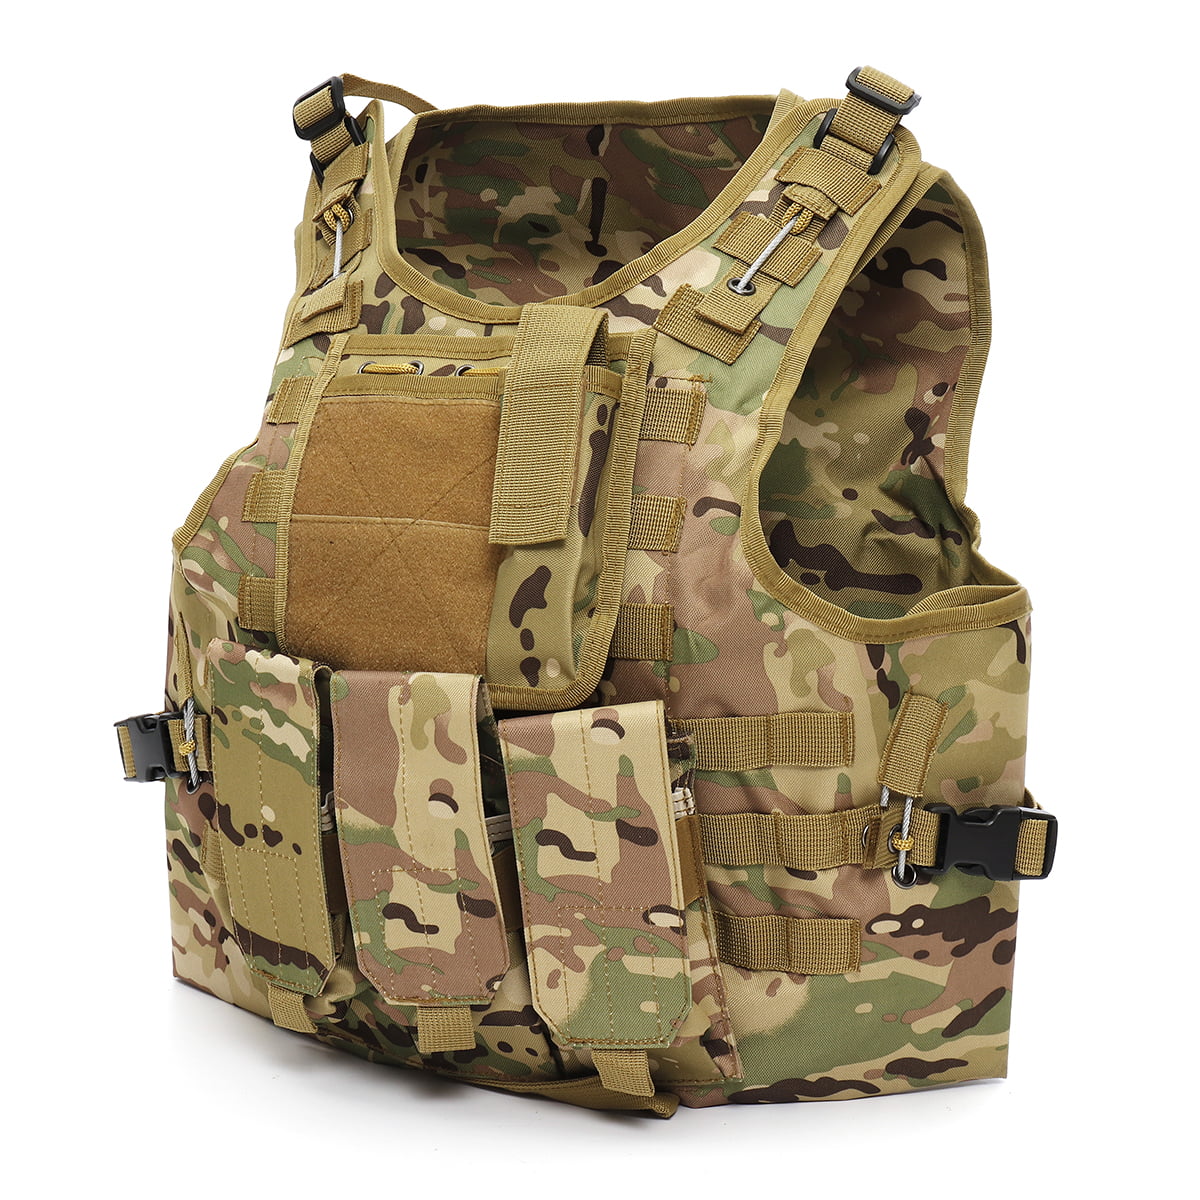 Details about   Outdoor Riding Vest Camouflage Battle Tactical Military Vest Portable Unisex Top 